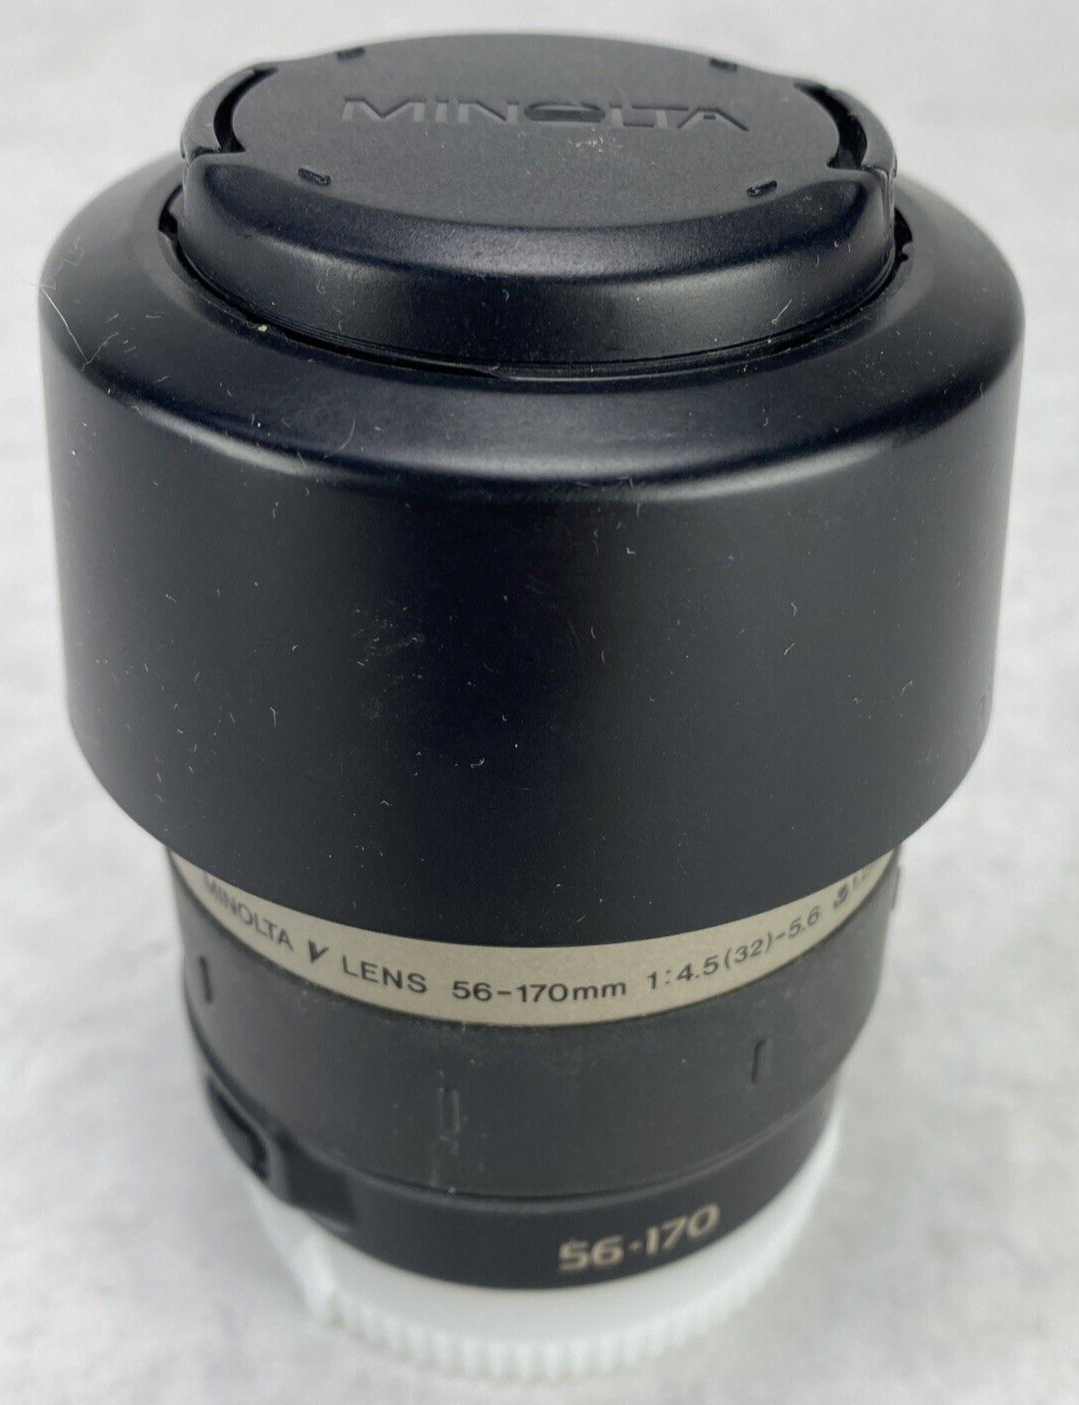 Minolta V 56-170mm f/4.5.-5.6 Lens CIB